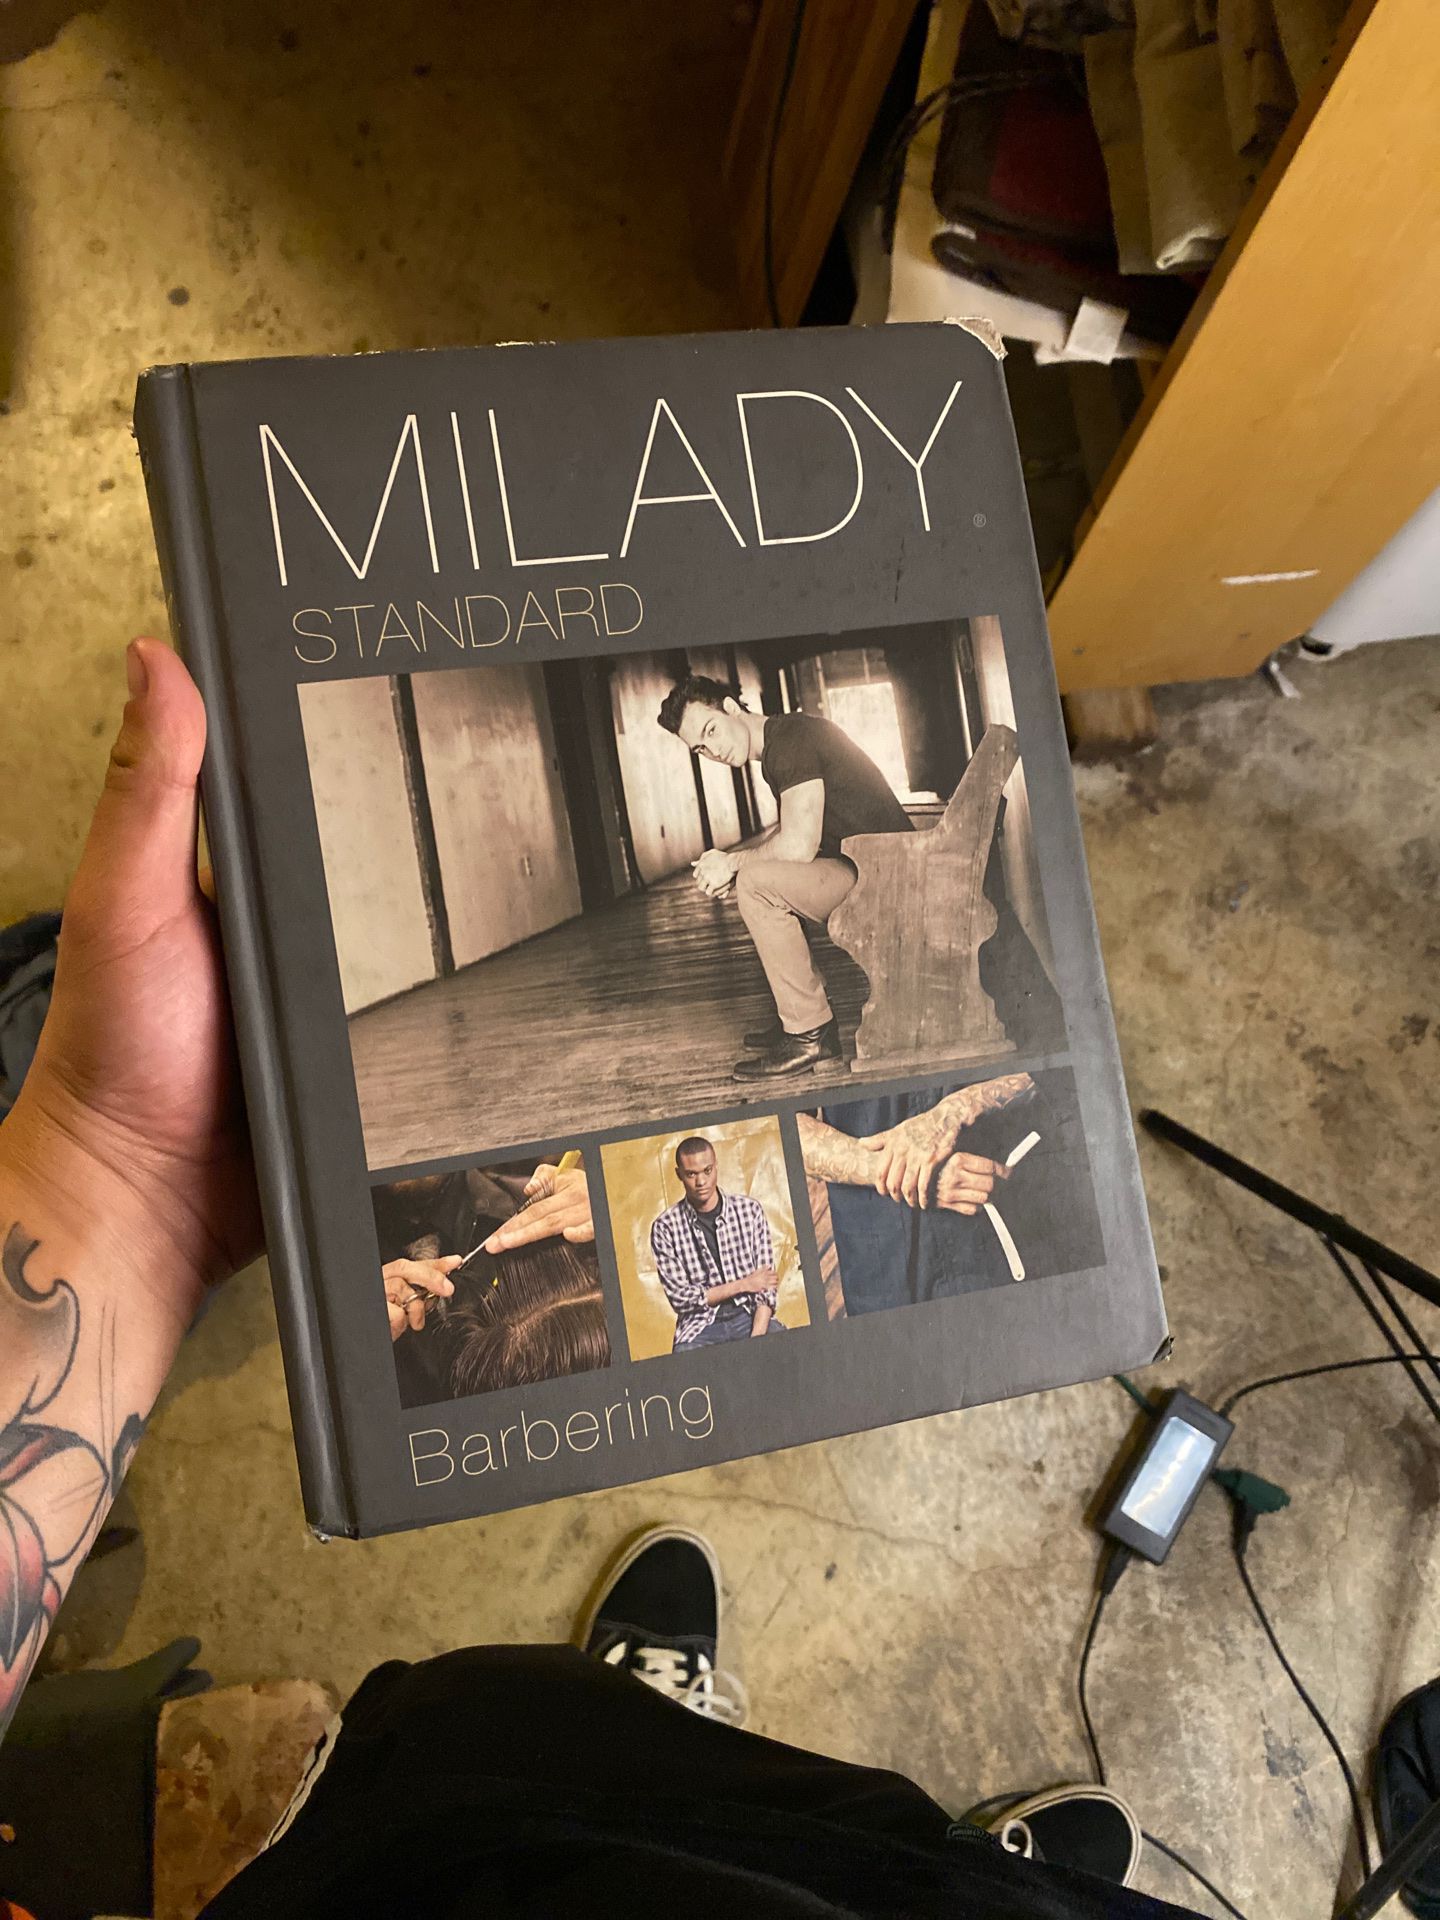 Milady barber book